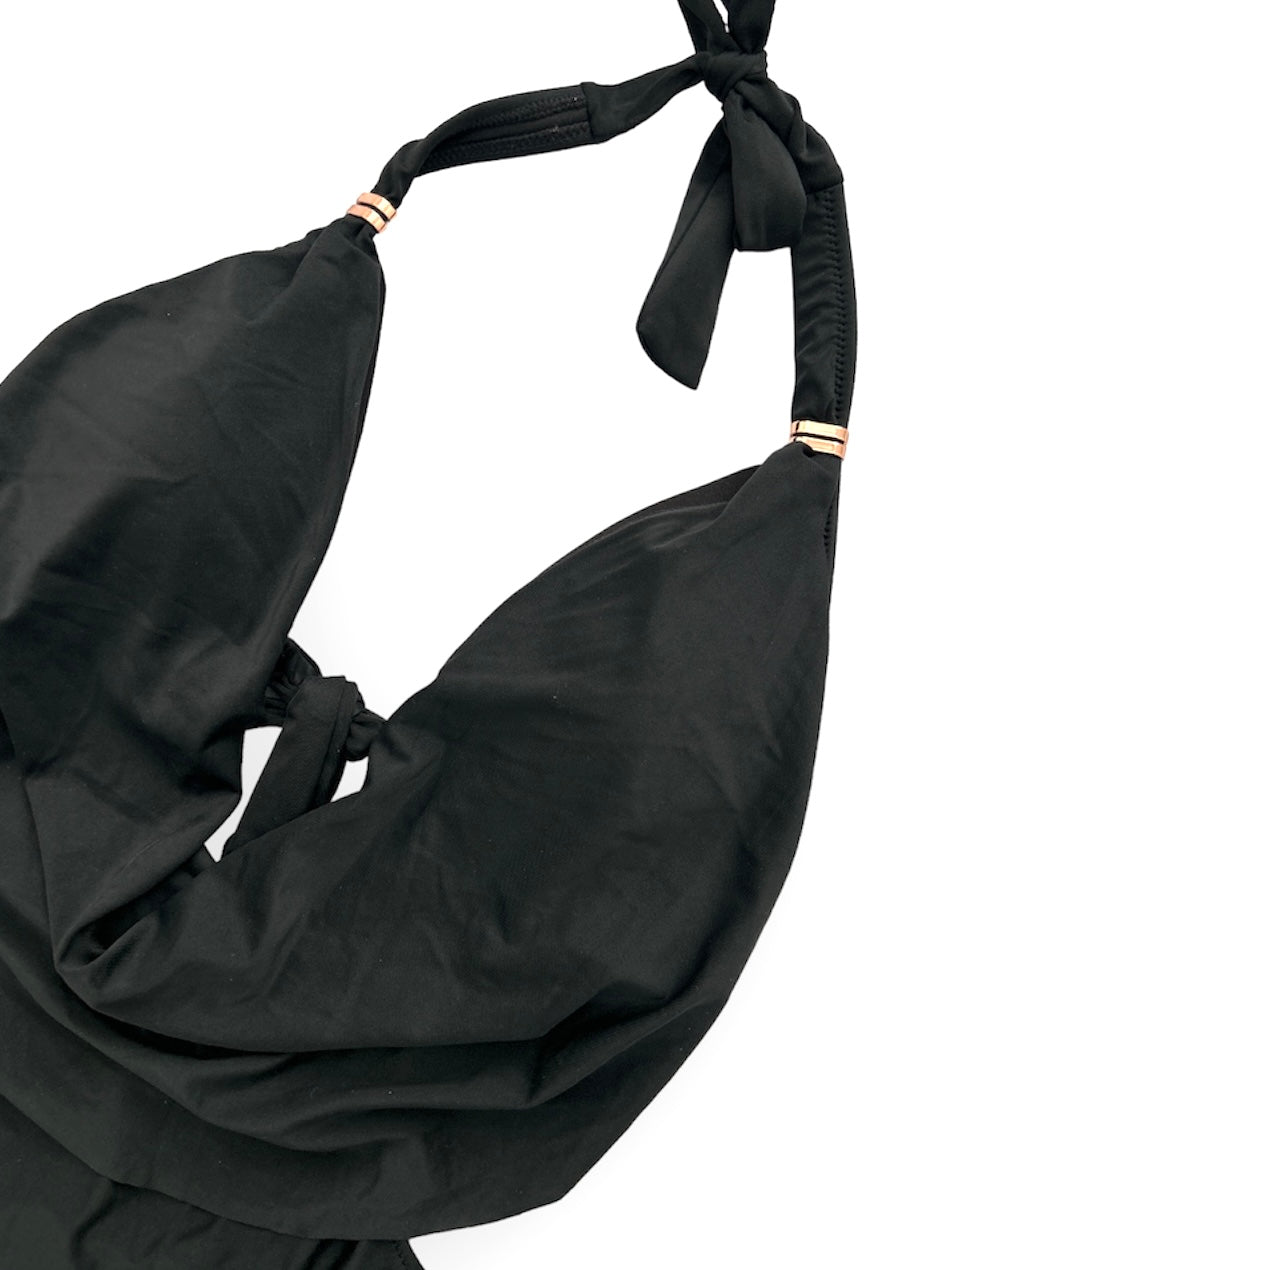 Core Solids Black Cowl Neck One-Piece Swimsuit Size S Women's Swimwear